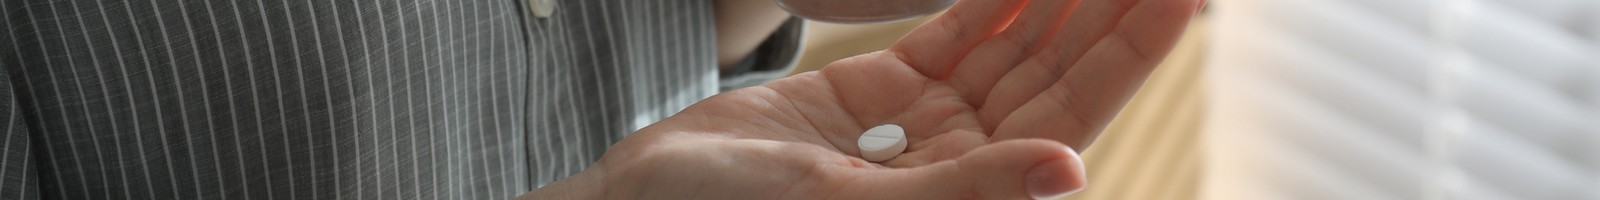 La France fait face à une pénurie de pilules abortives